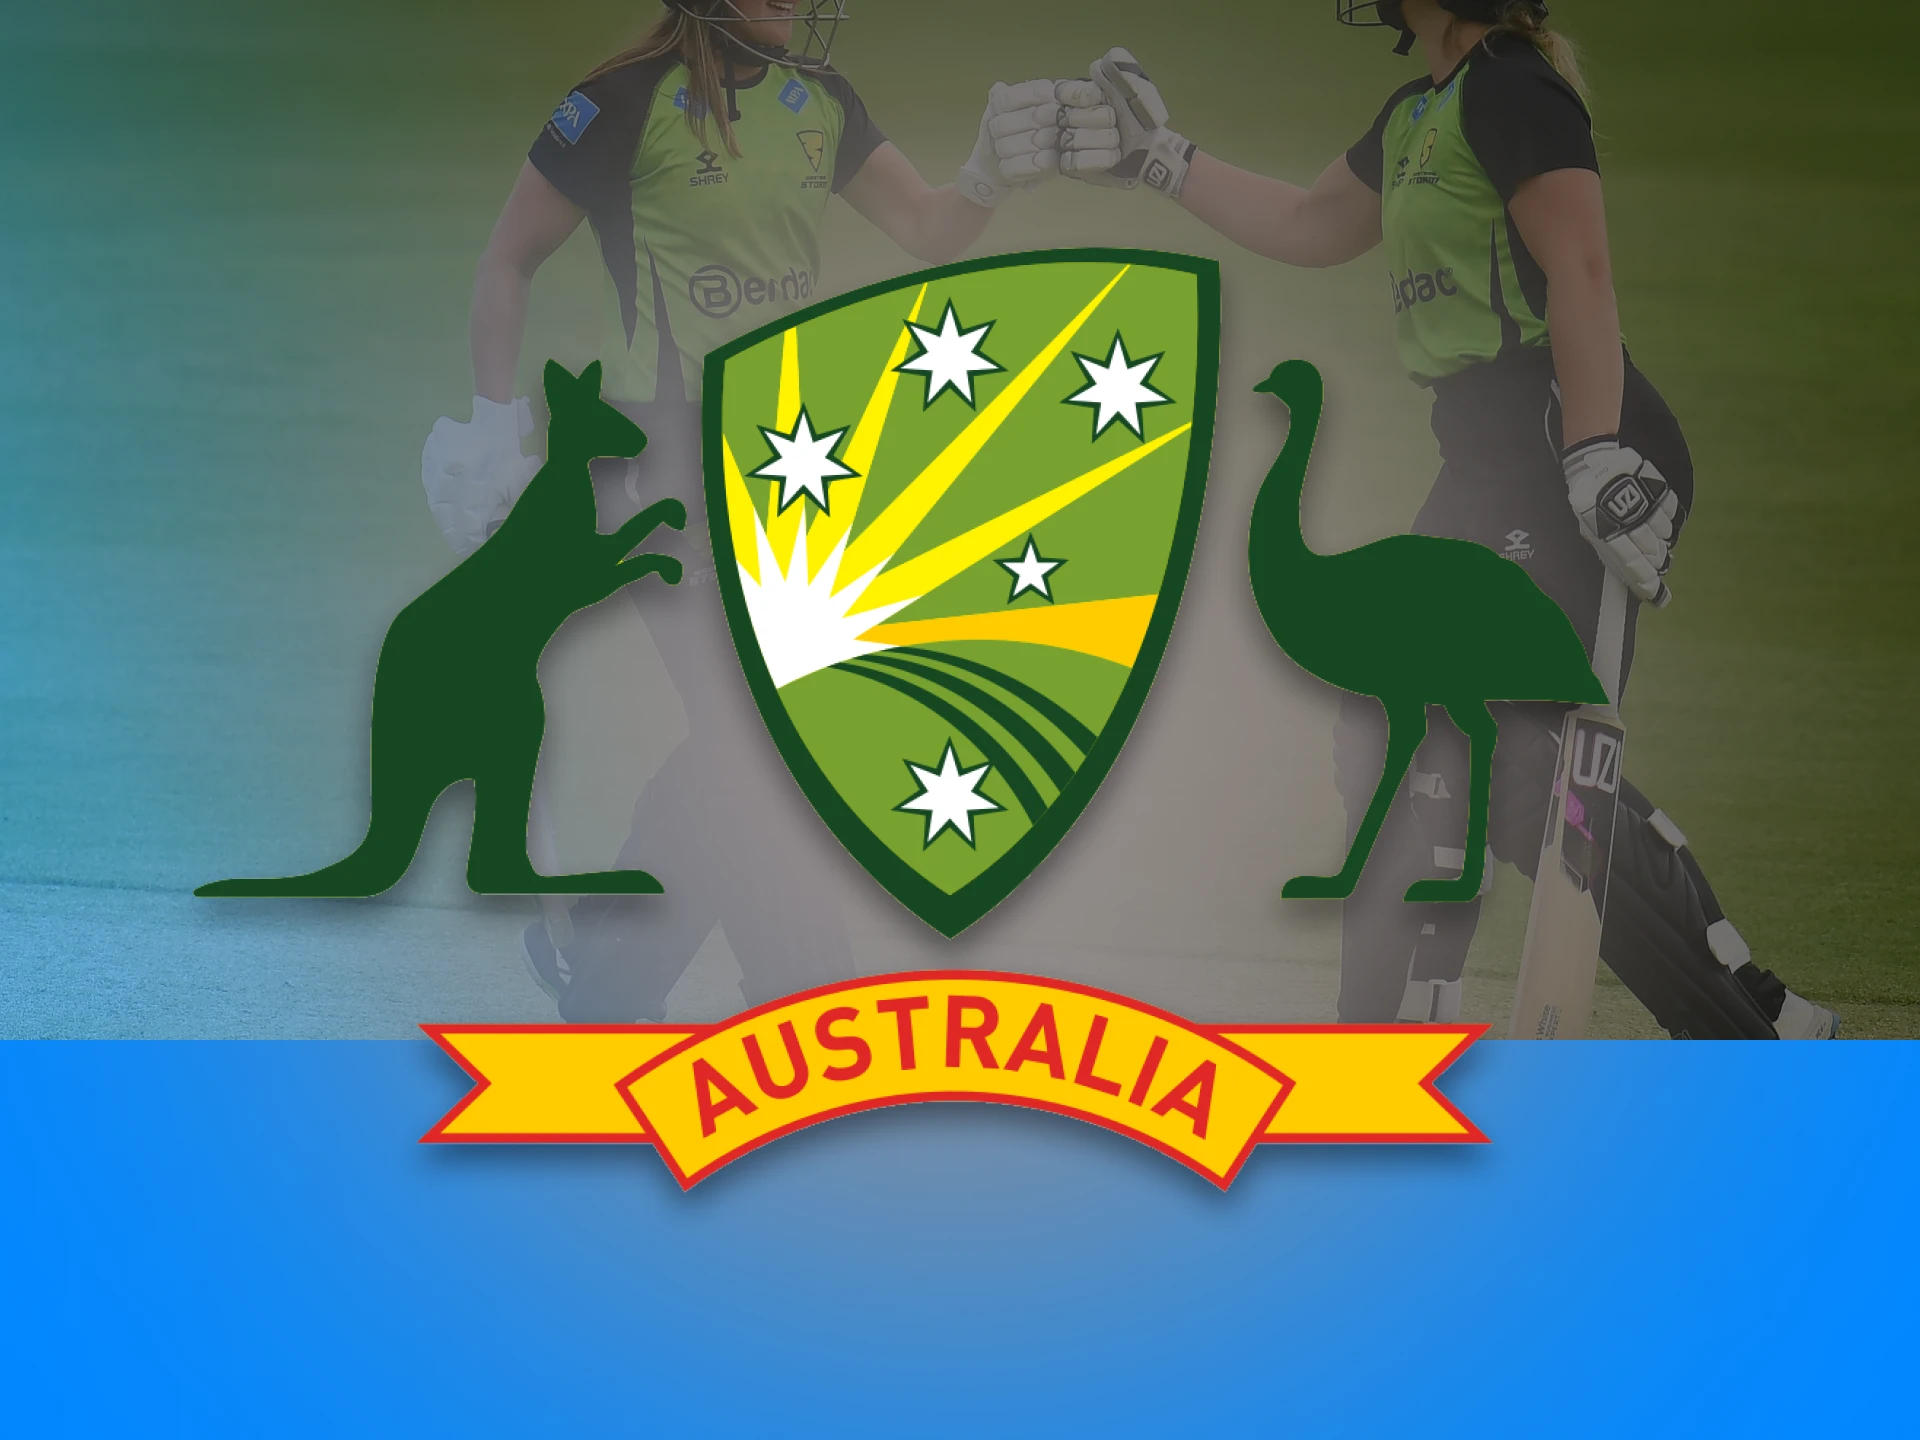 Australia regularly wins the Women's Ashes tournament.